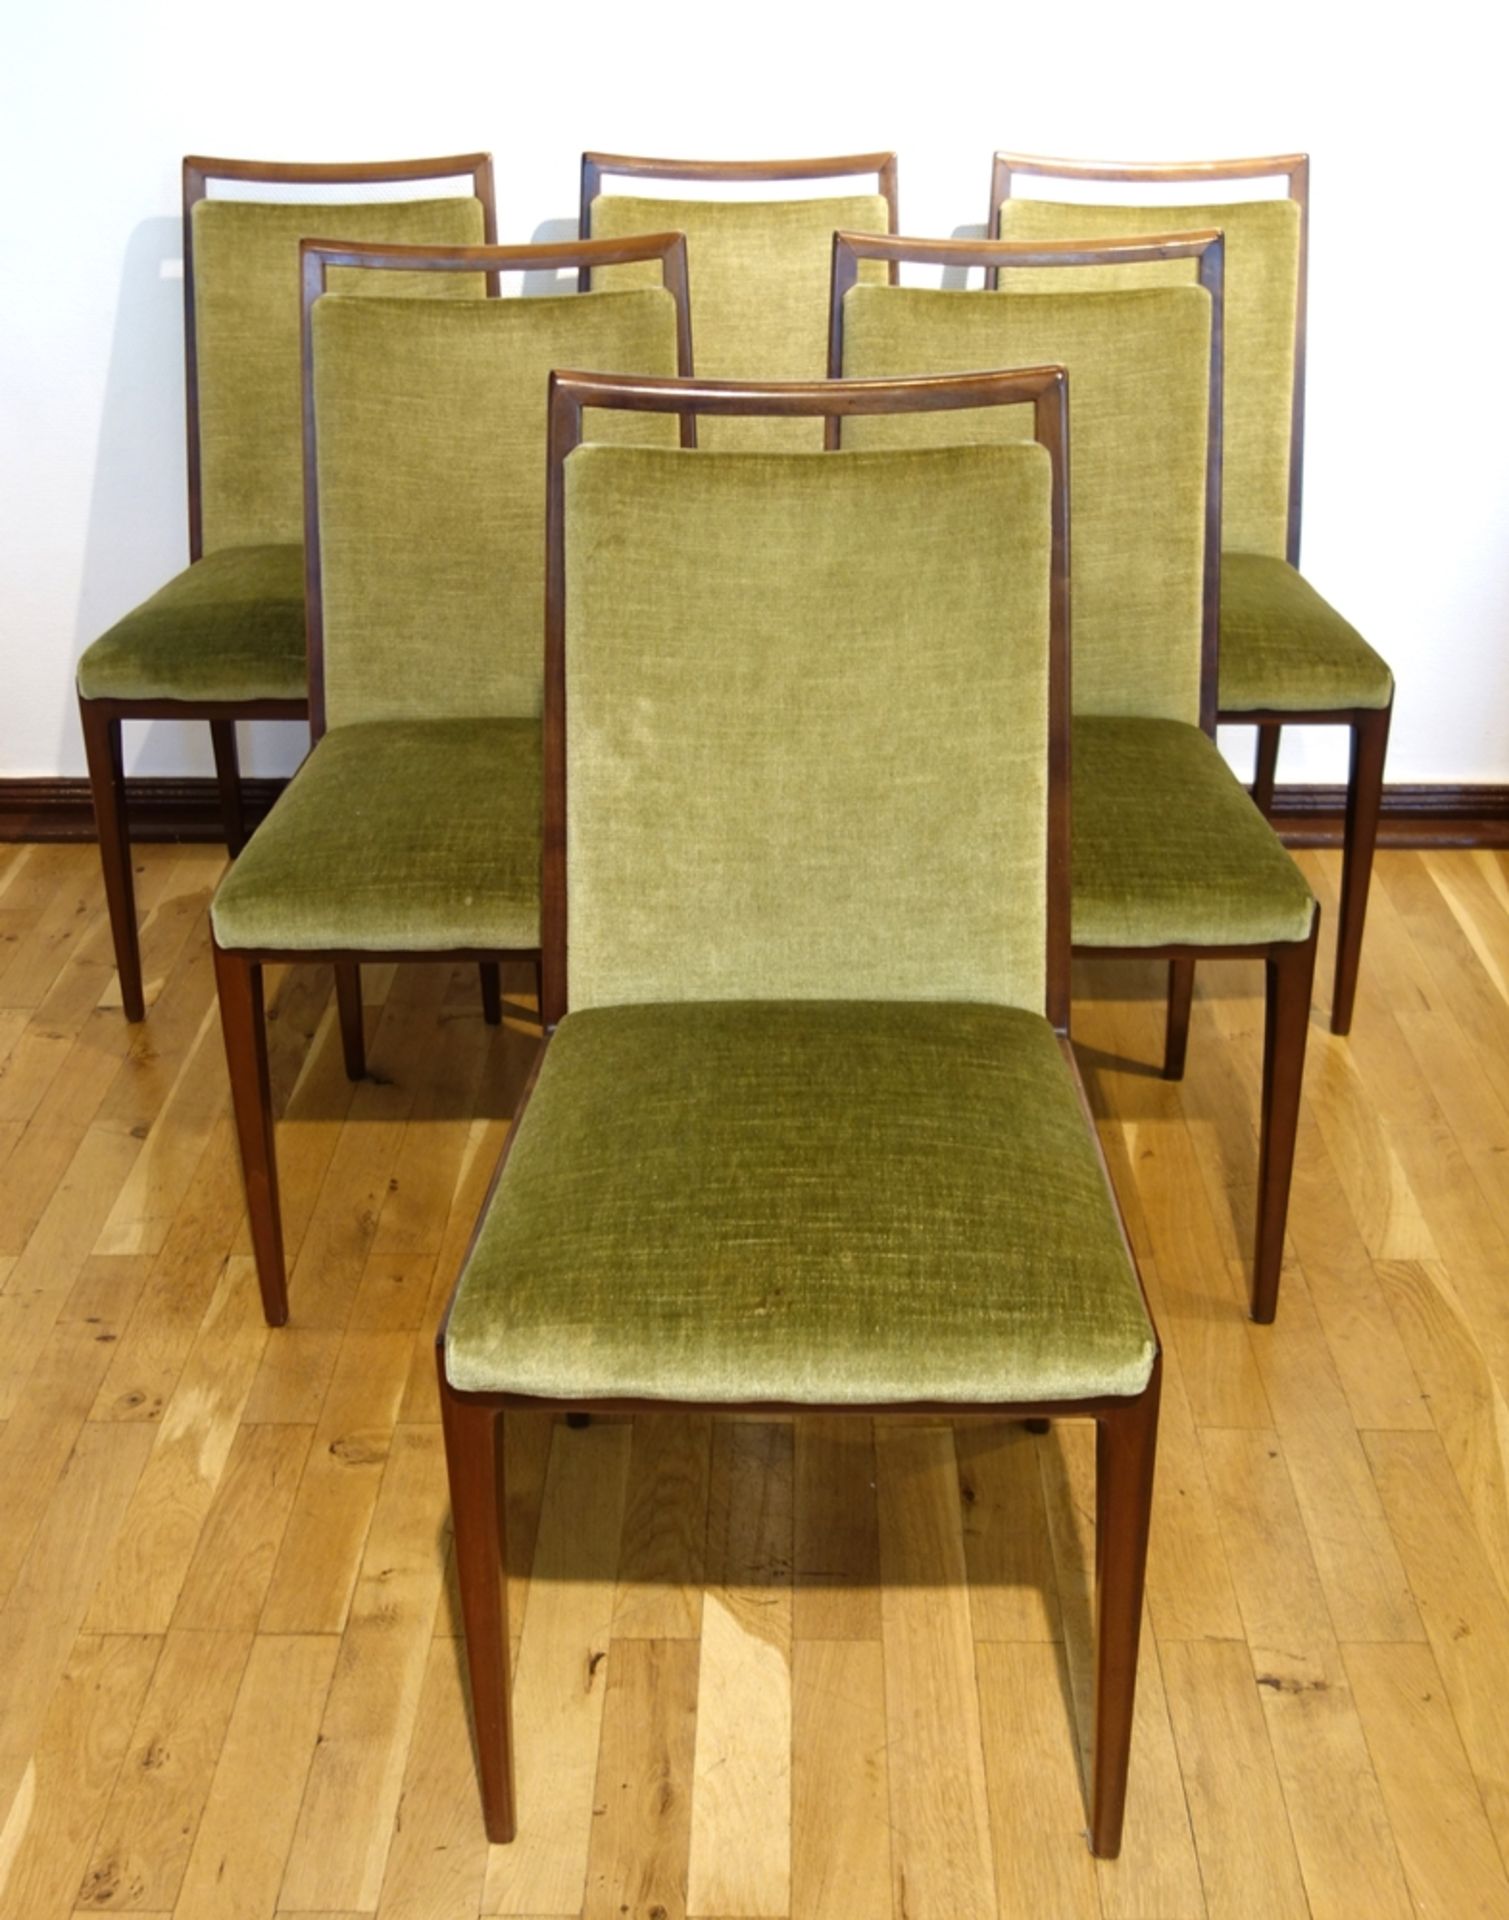 6 Stühle, Dänemark, 1960er Jahre, schlichtes Design, mit grünem Stoffbezug, an den Lehnen vereinzelt